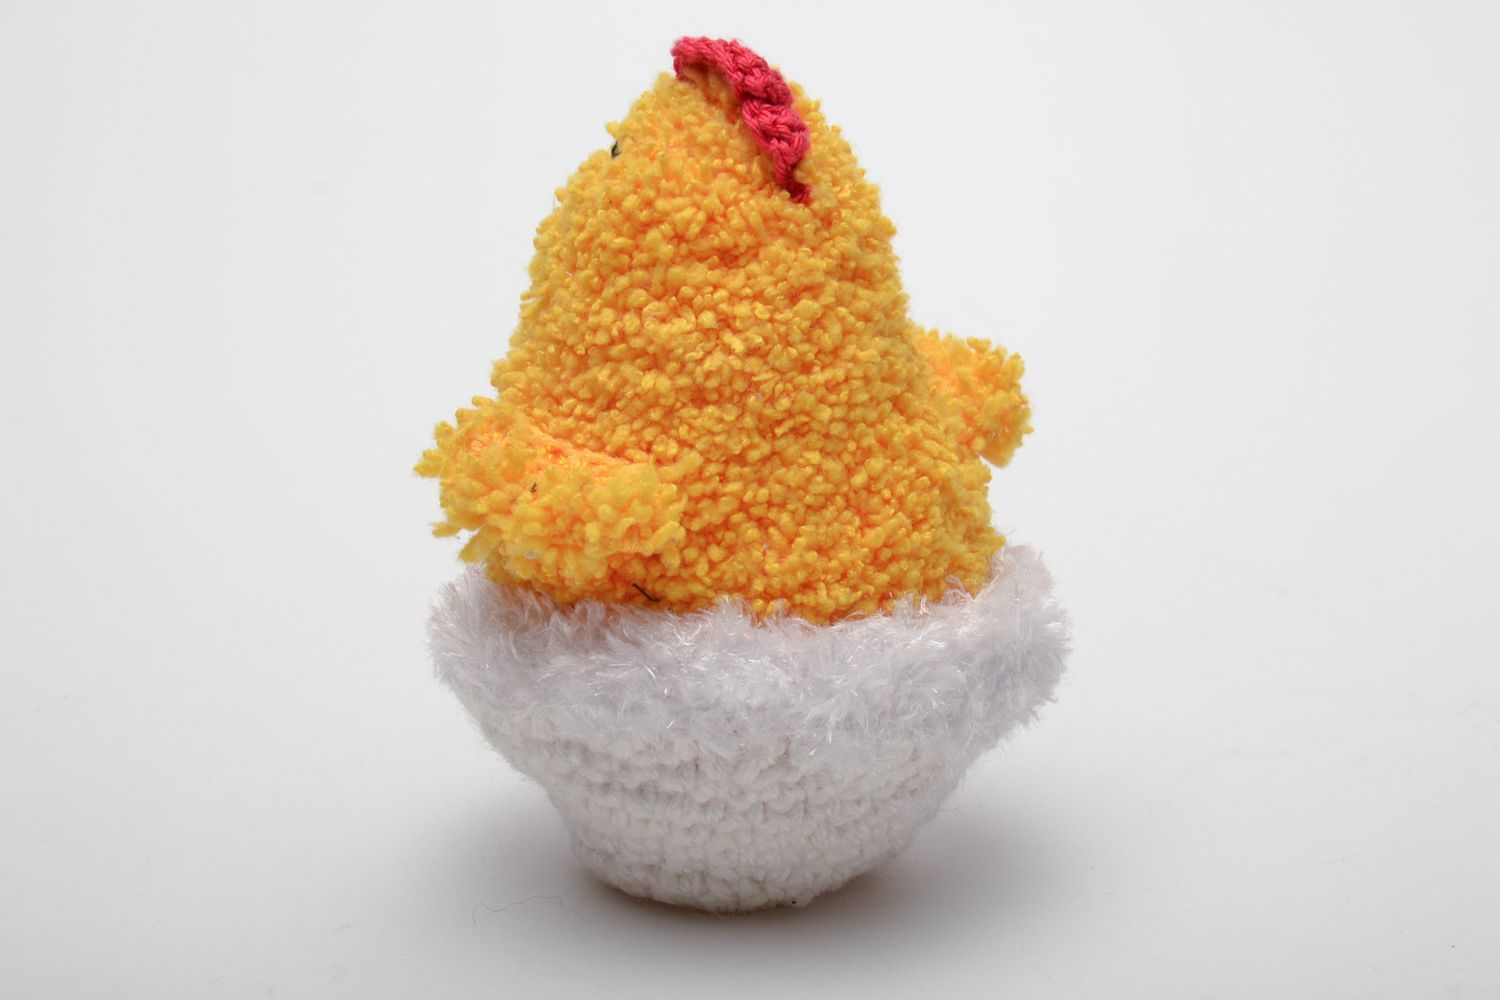 Мягкая вязаная игрушка в виде цыпленка в яйце  фото 3